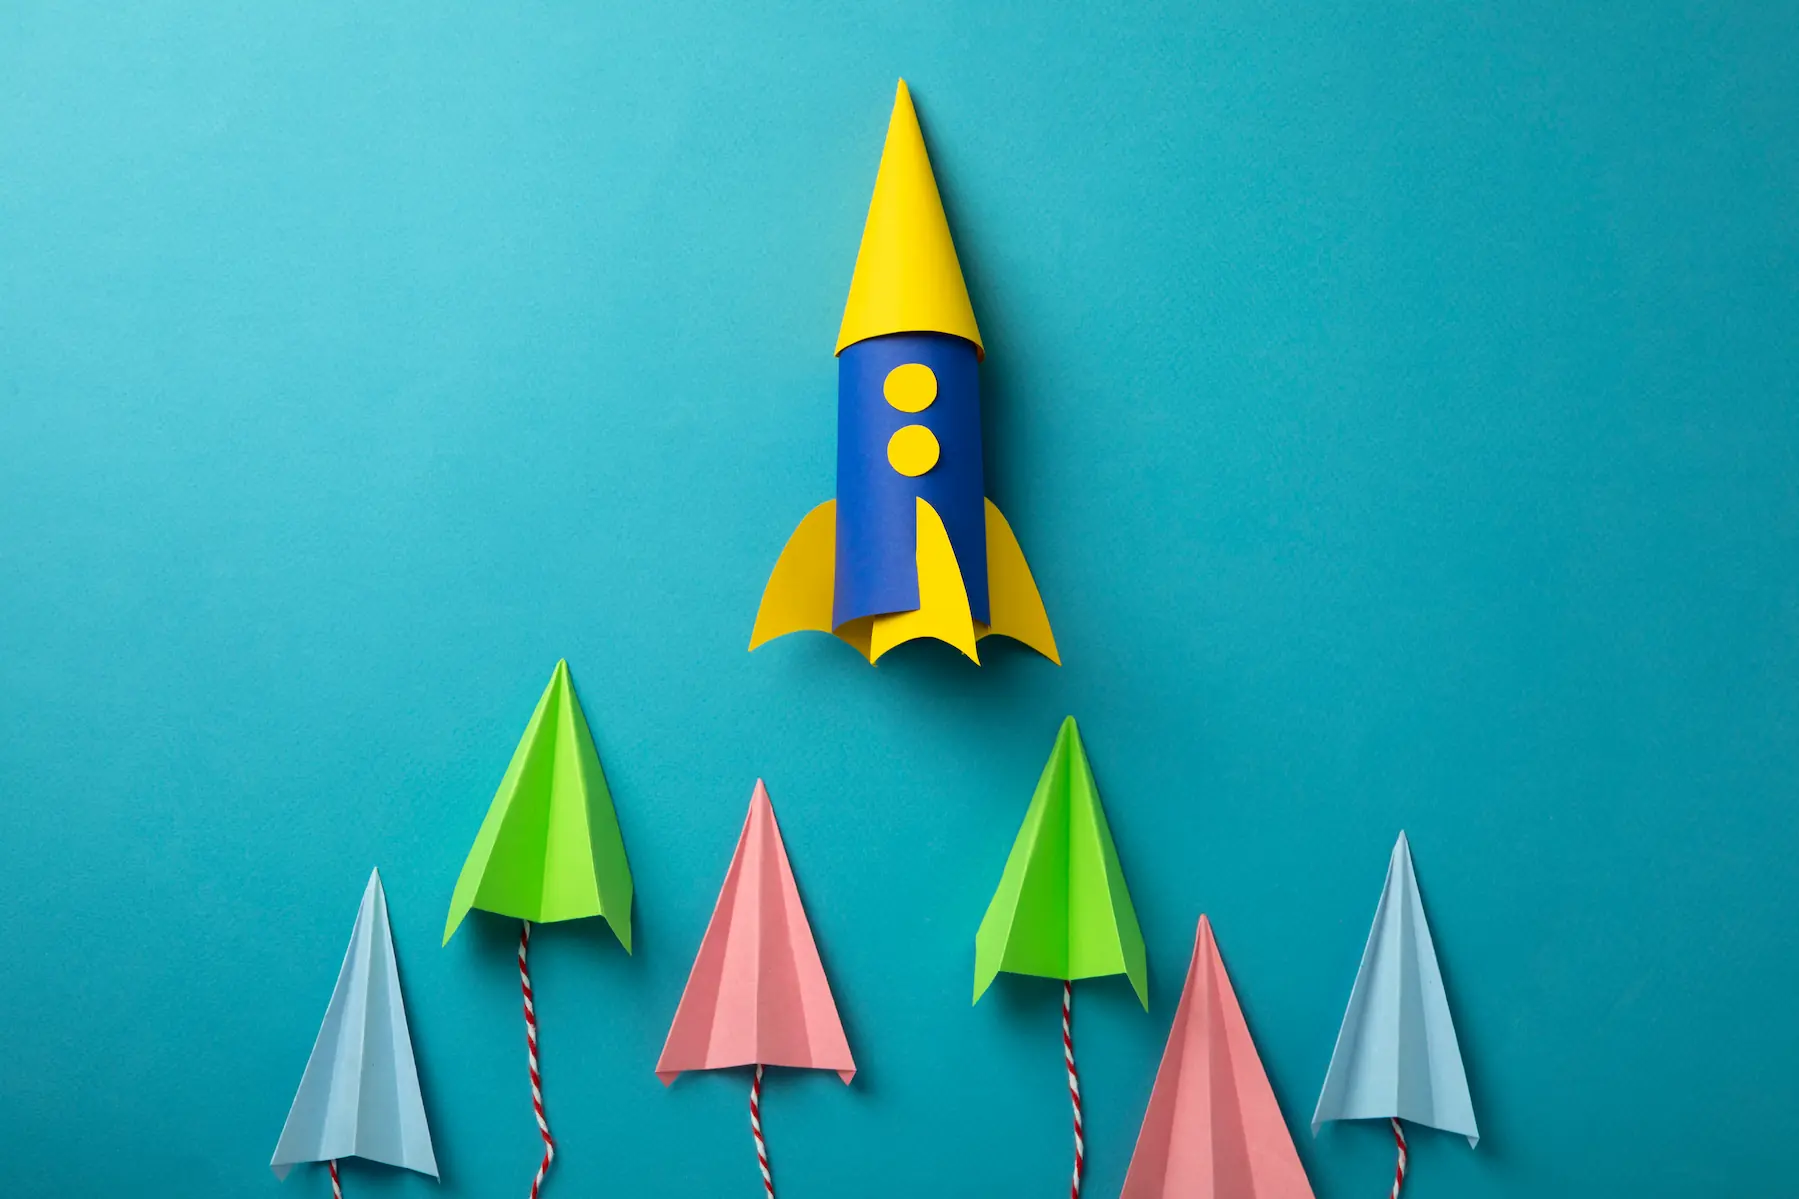 Une fusée en carton colorée sur fond bleu avec des petits avions en papier jute dessous qui s'envolent vers le haut